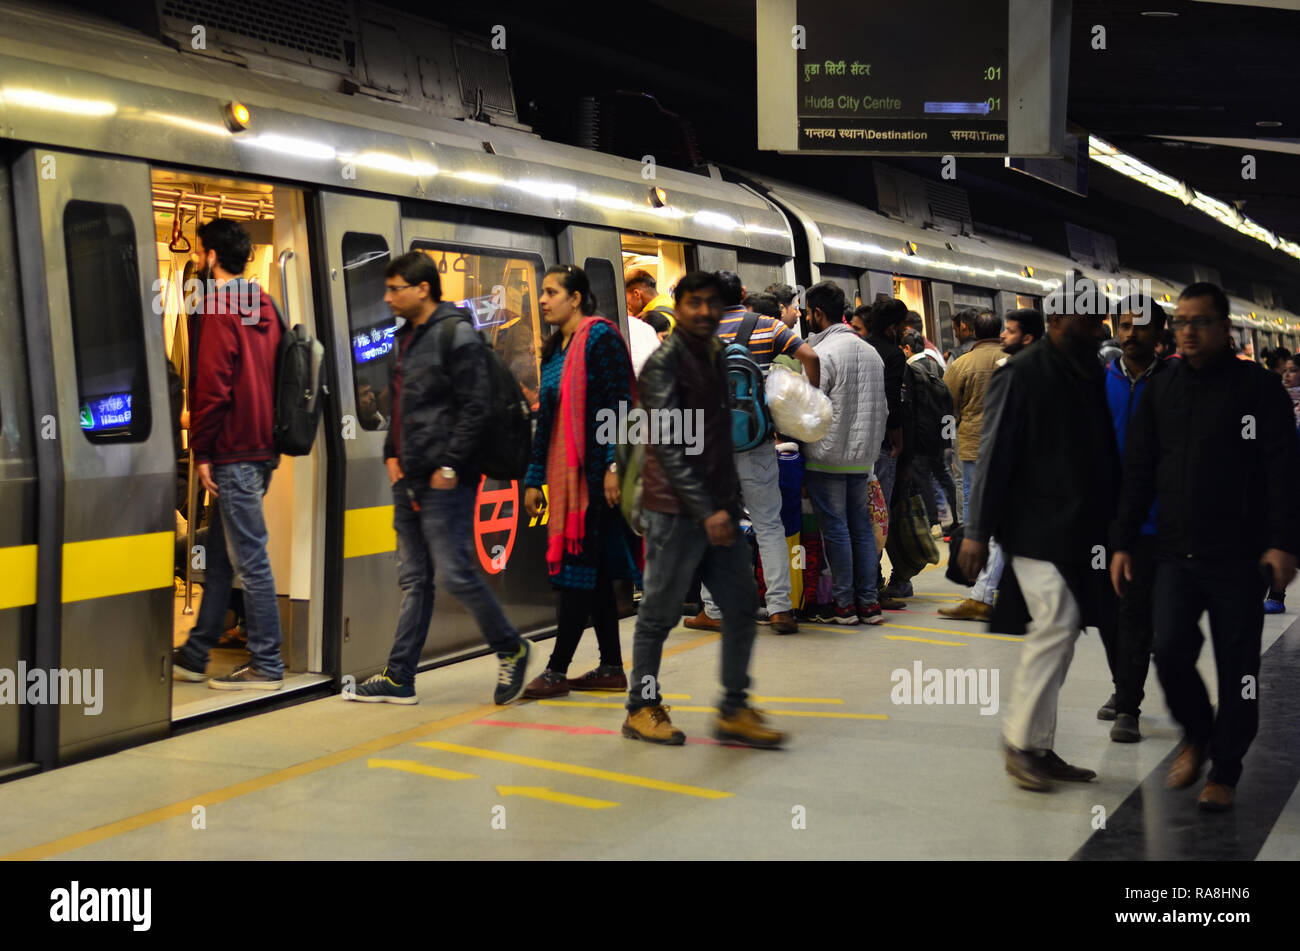 Delhi, Inde, 2019. Les gens de descendre à la station de métro Delhi occupé. Le métro est le transport moderne pour les personnes à Jaipur, Lucknow, Kolkata Banque D'Images